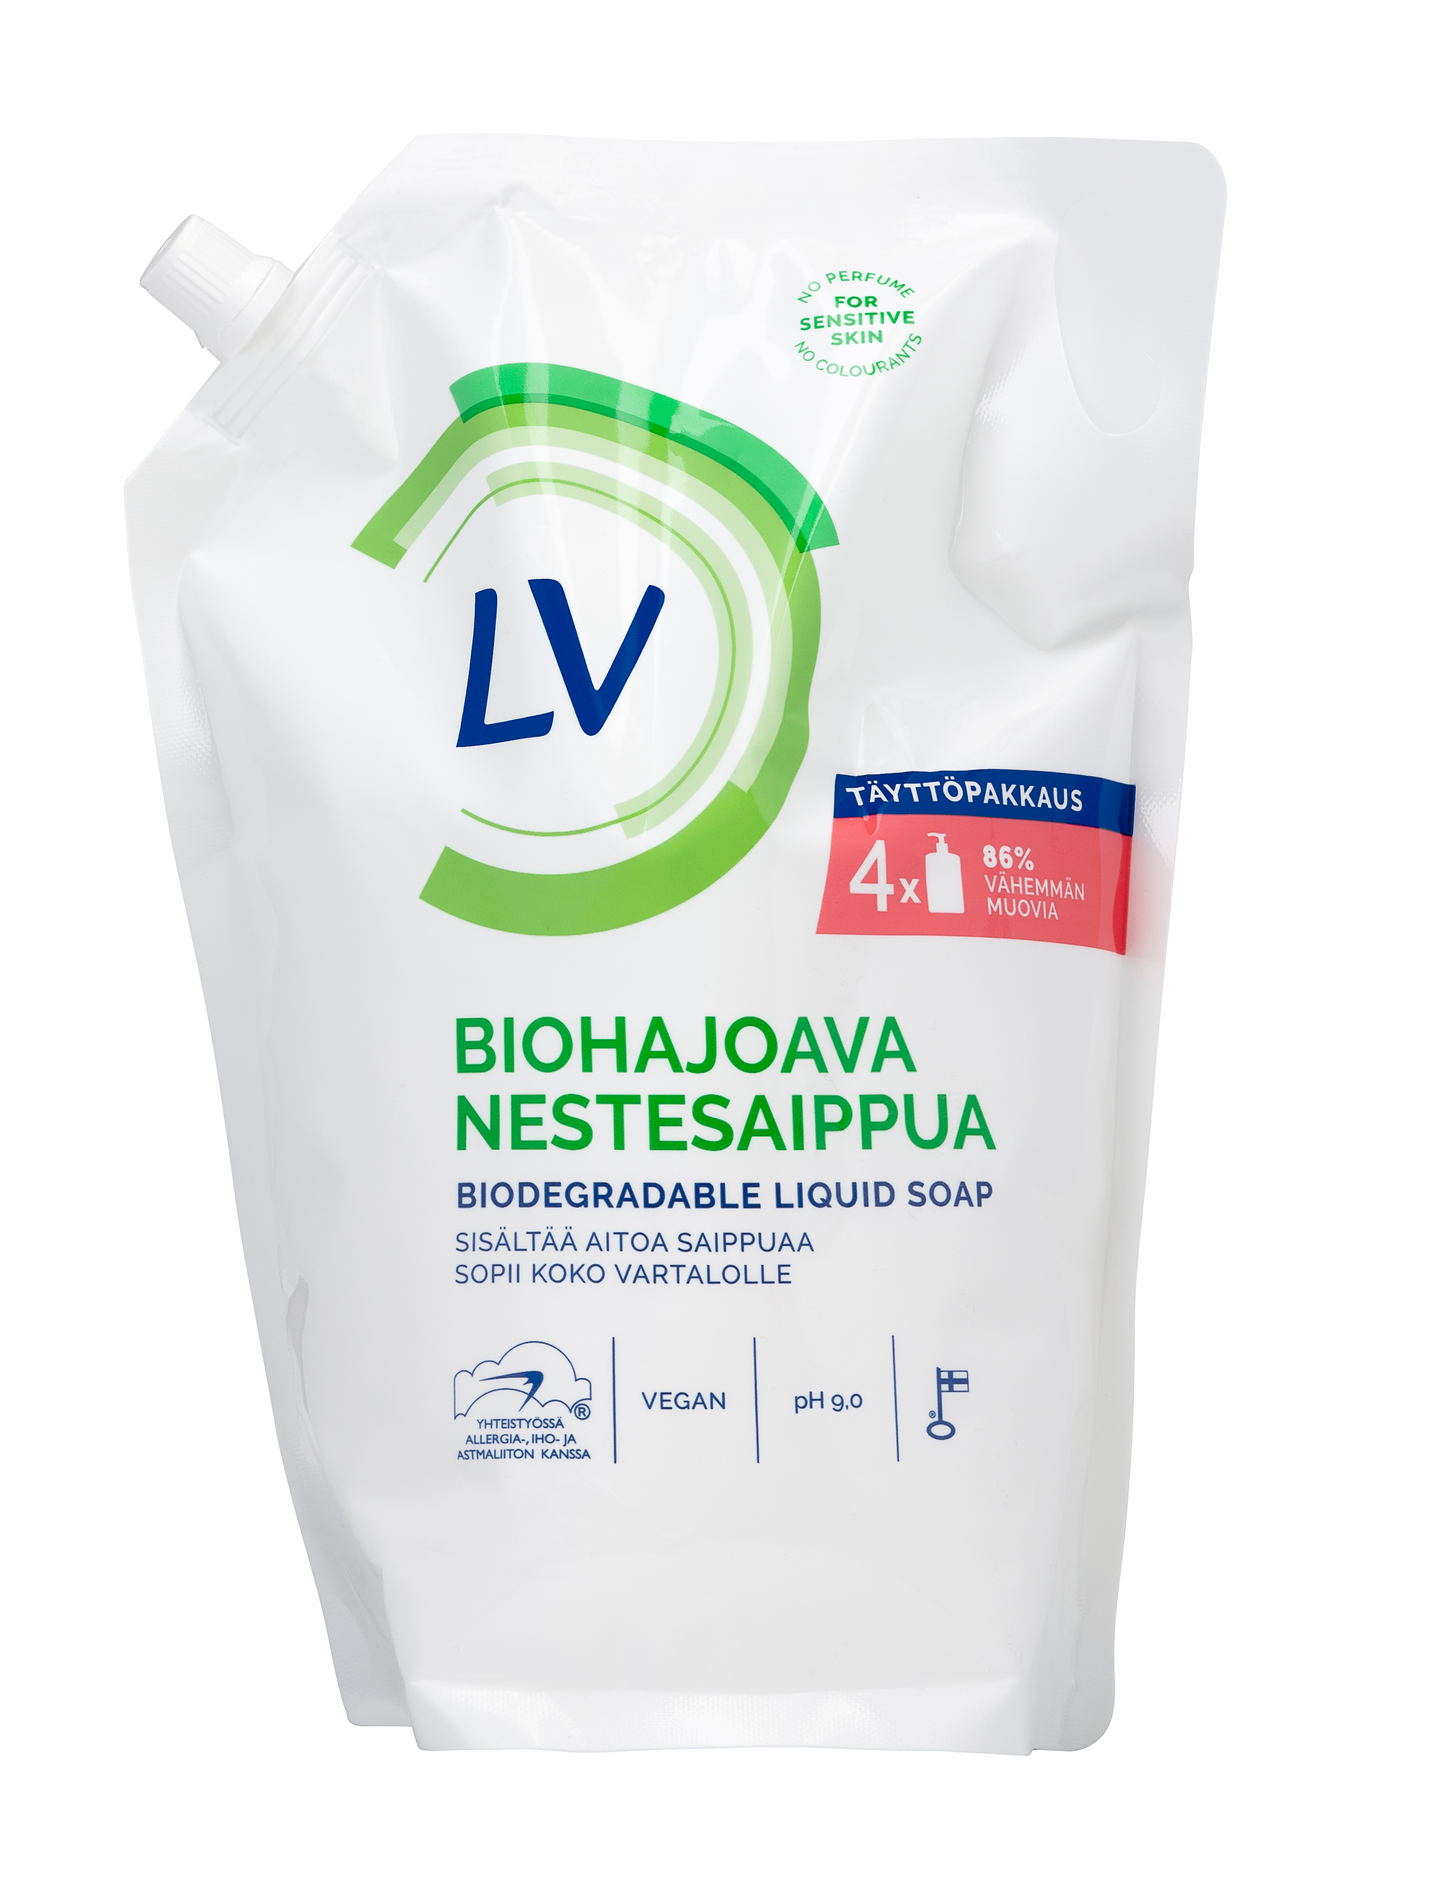 LV biohajoava nestesaippua 1,2l täyttöpussi